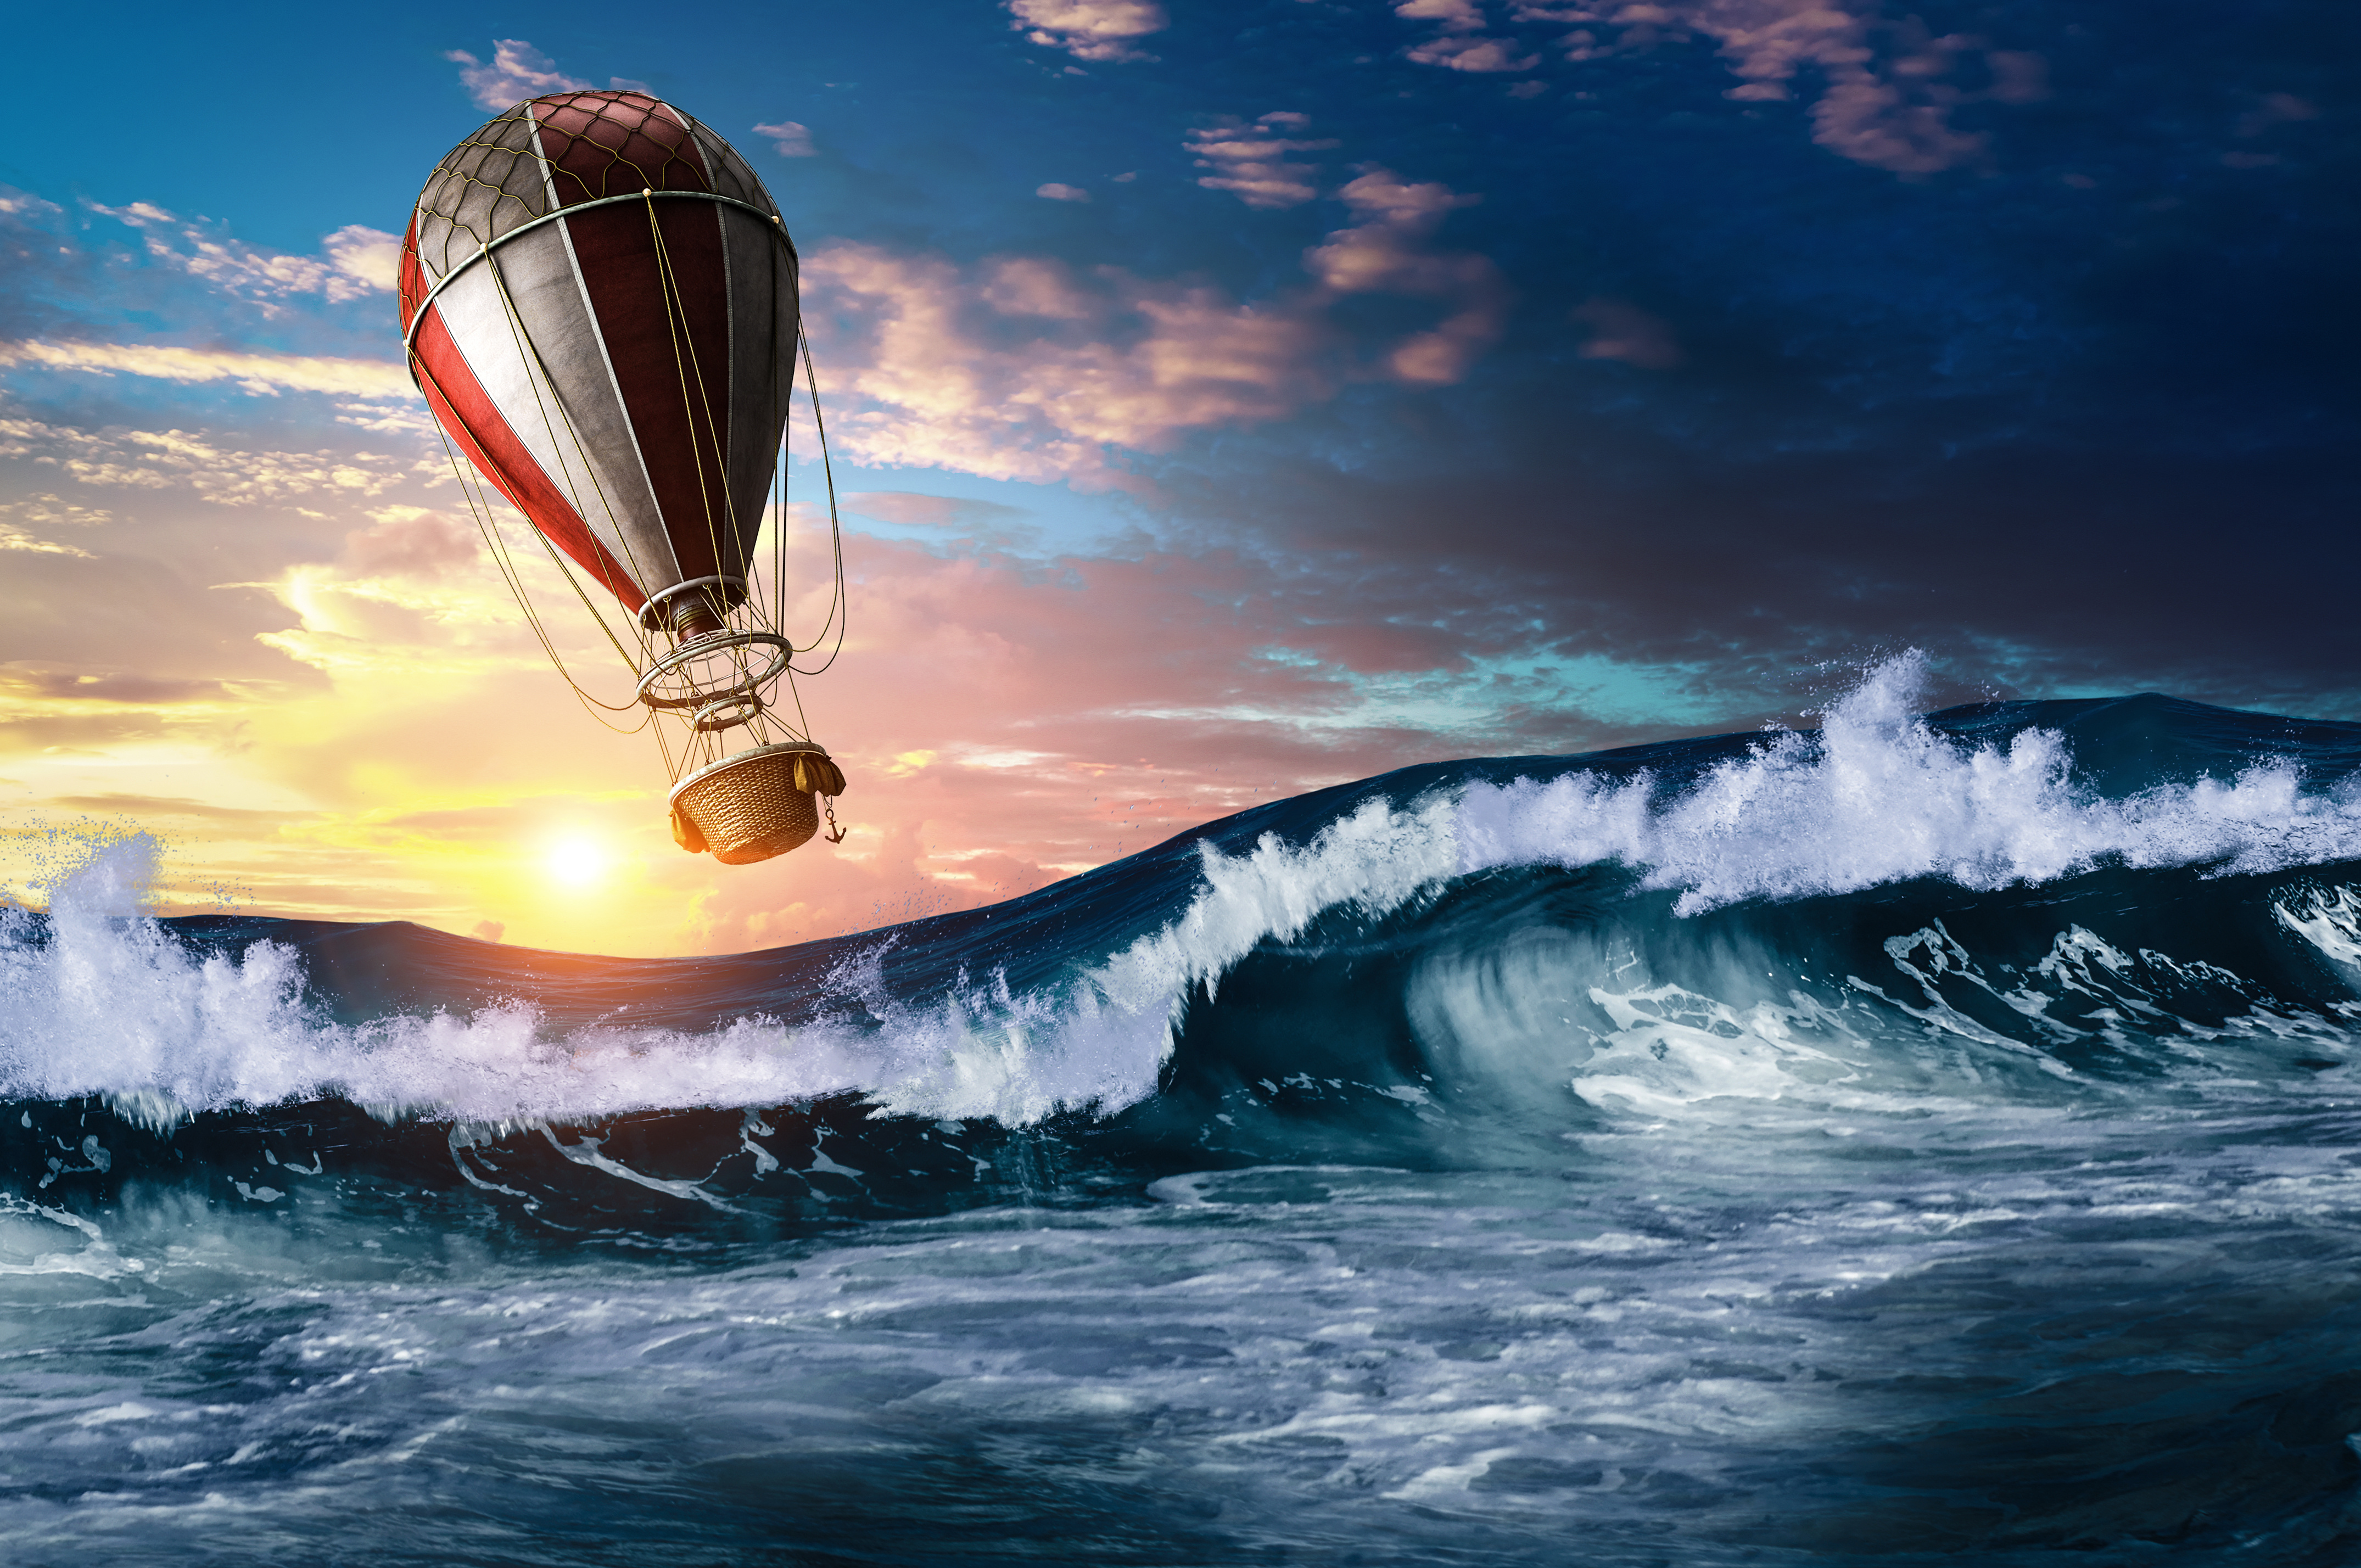 Les passagers du ballon dirigeable se retrouvent emportés par un ouragan au-dessus de l'océan Pacifique. ©&nbsp;Sergey&nbsp;Nivens, Adobe Stock